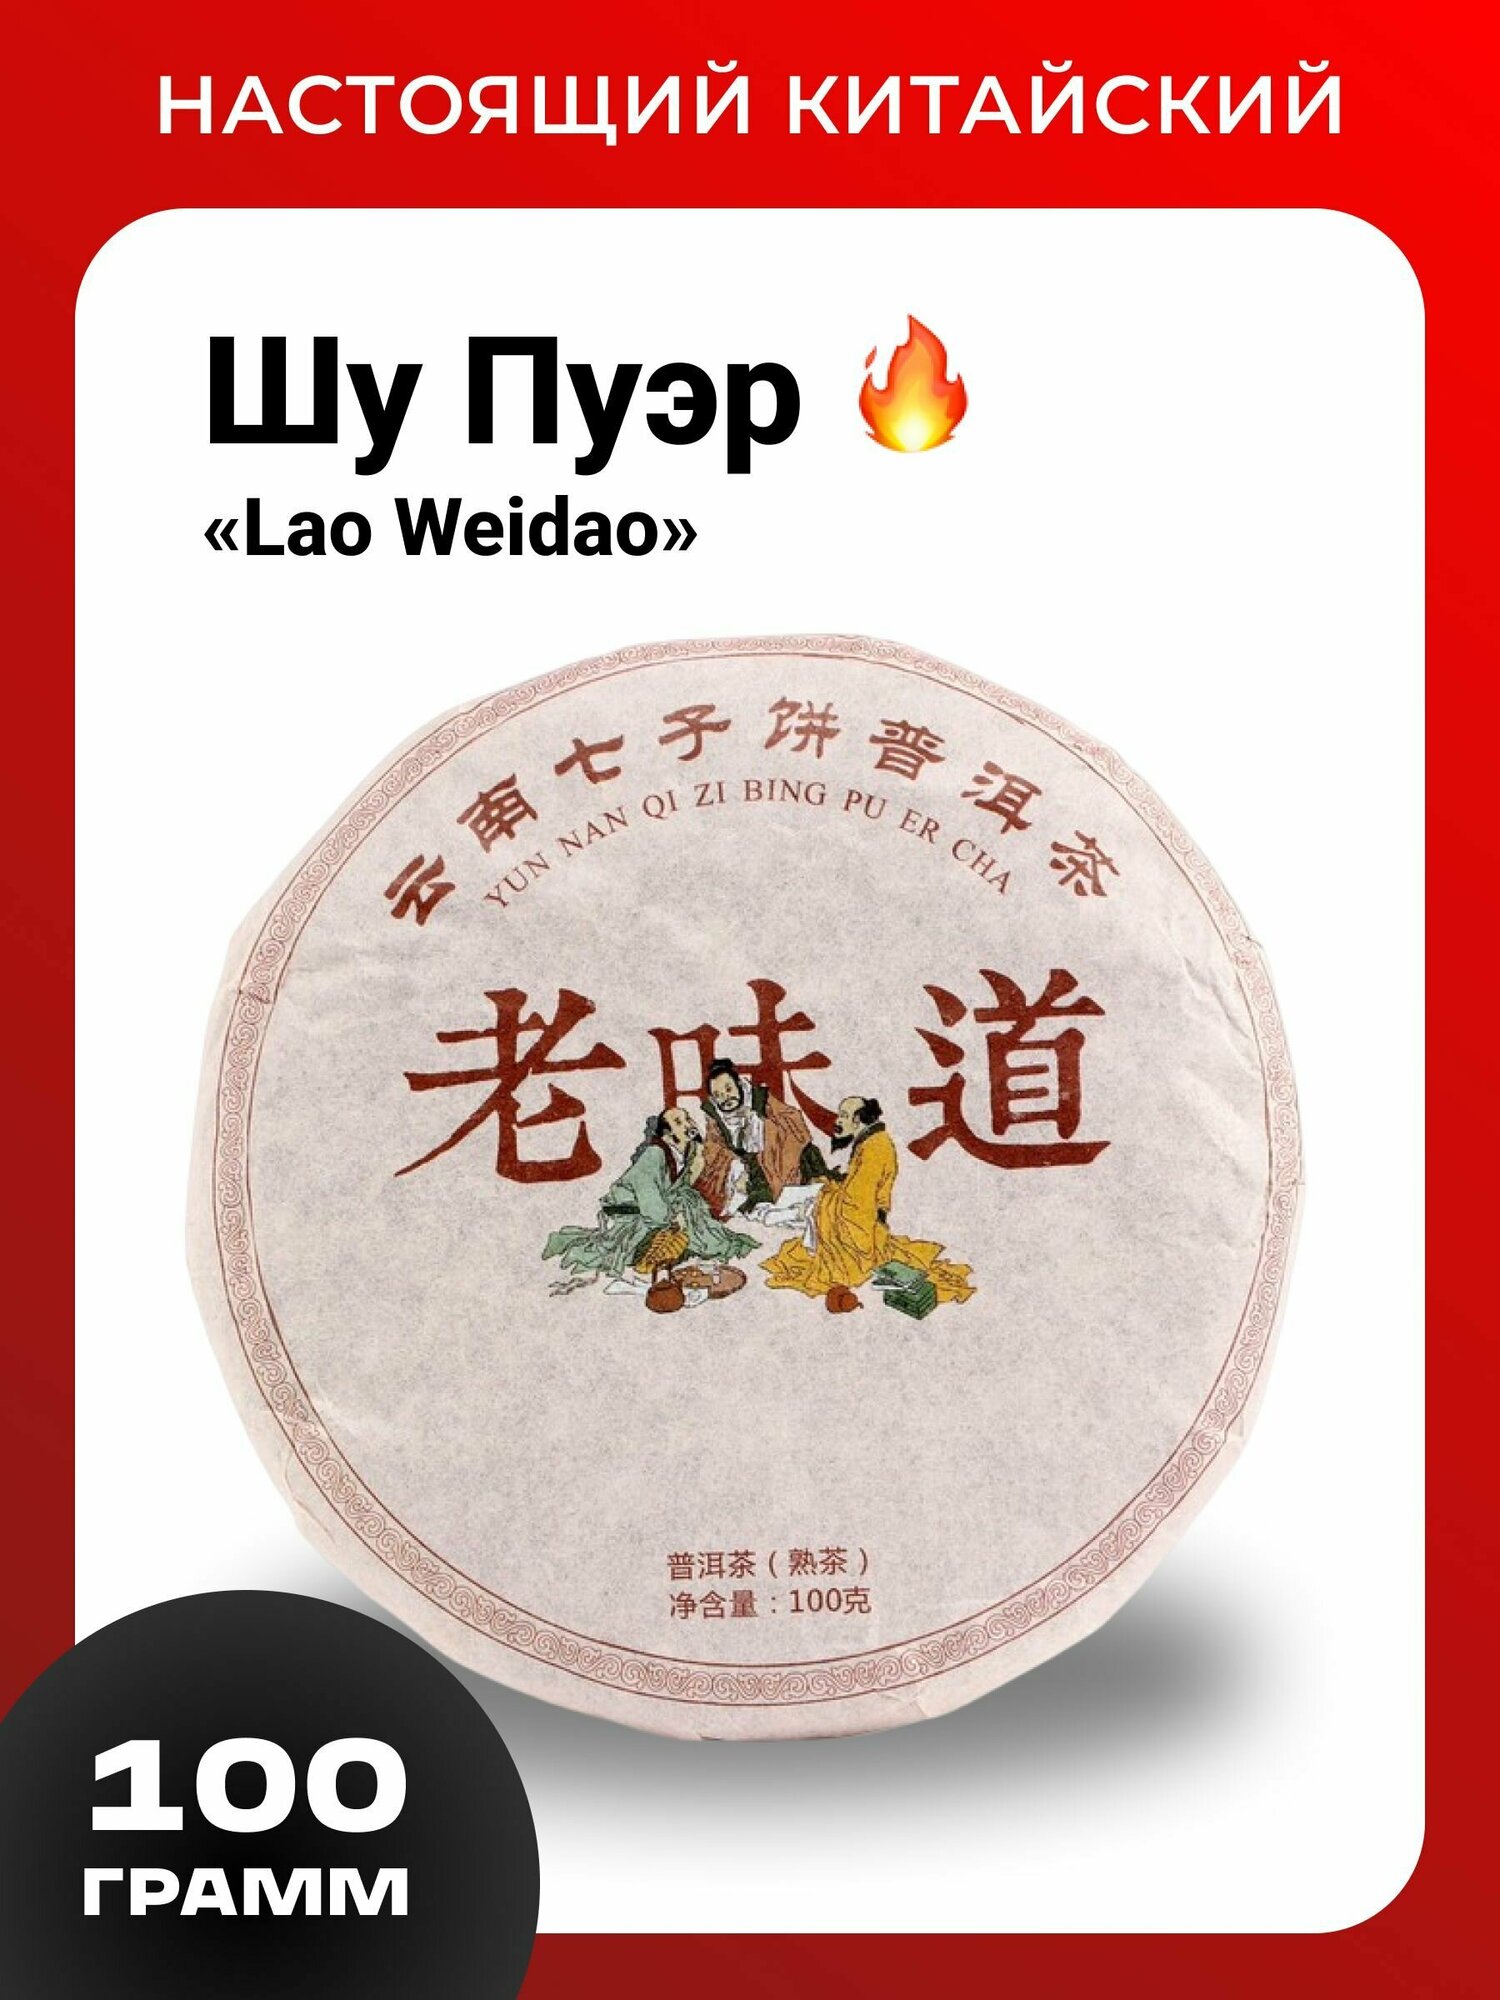 Чай Шу Пуэр "Lao weidao", китайский прессованный блин, 100г.